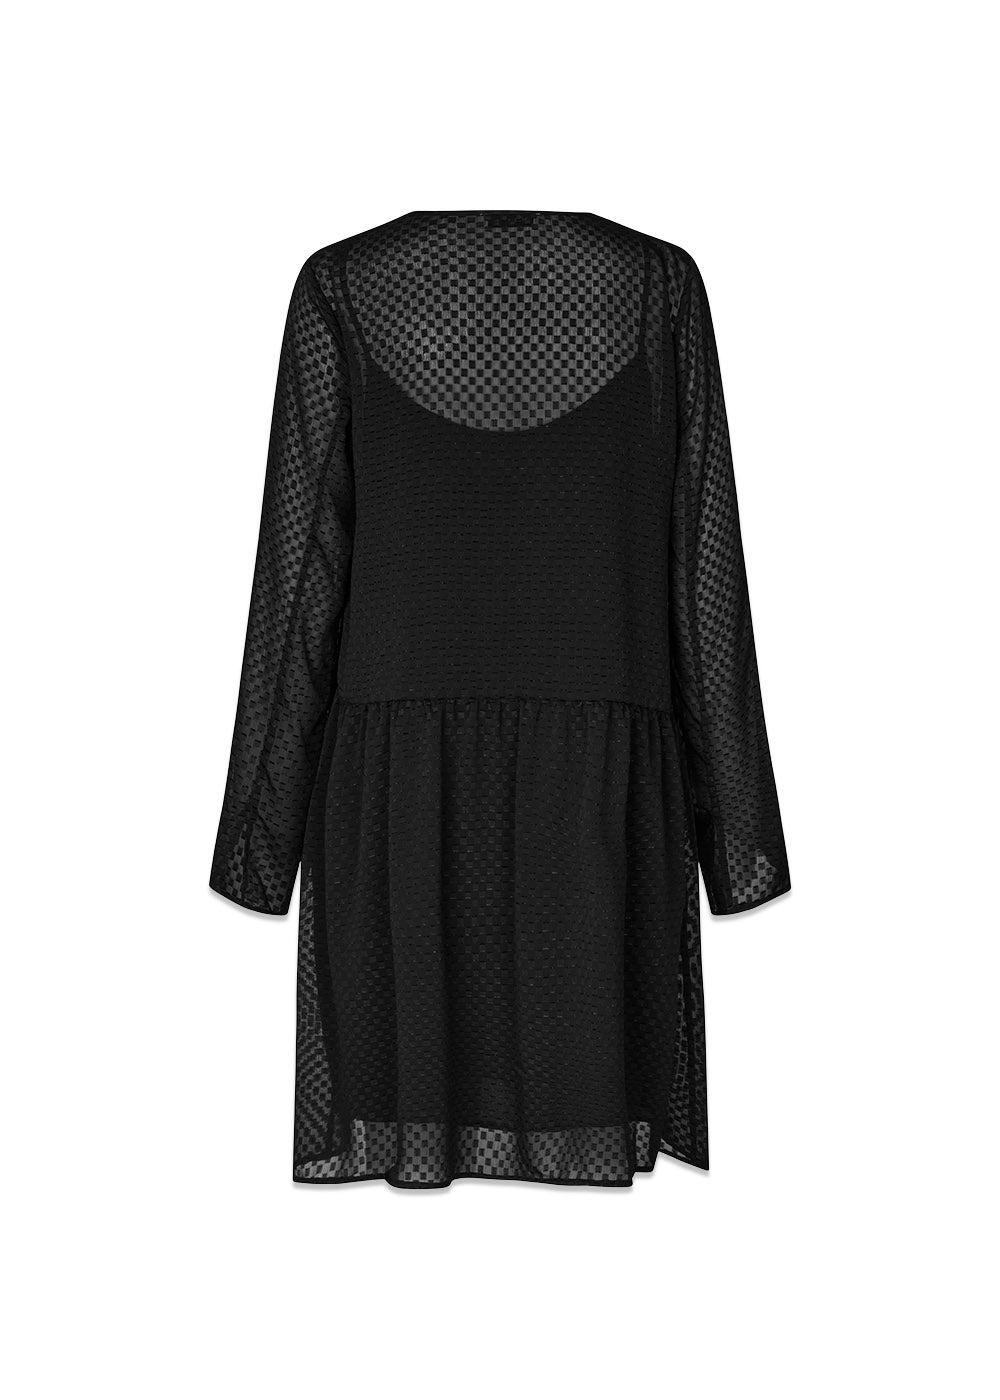 GracelleMD dress - Black